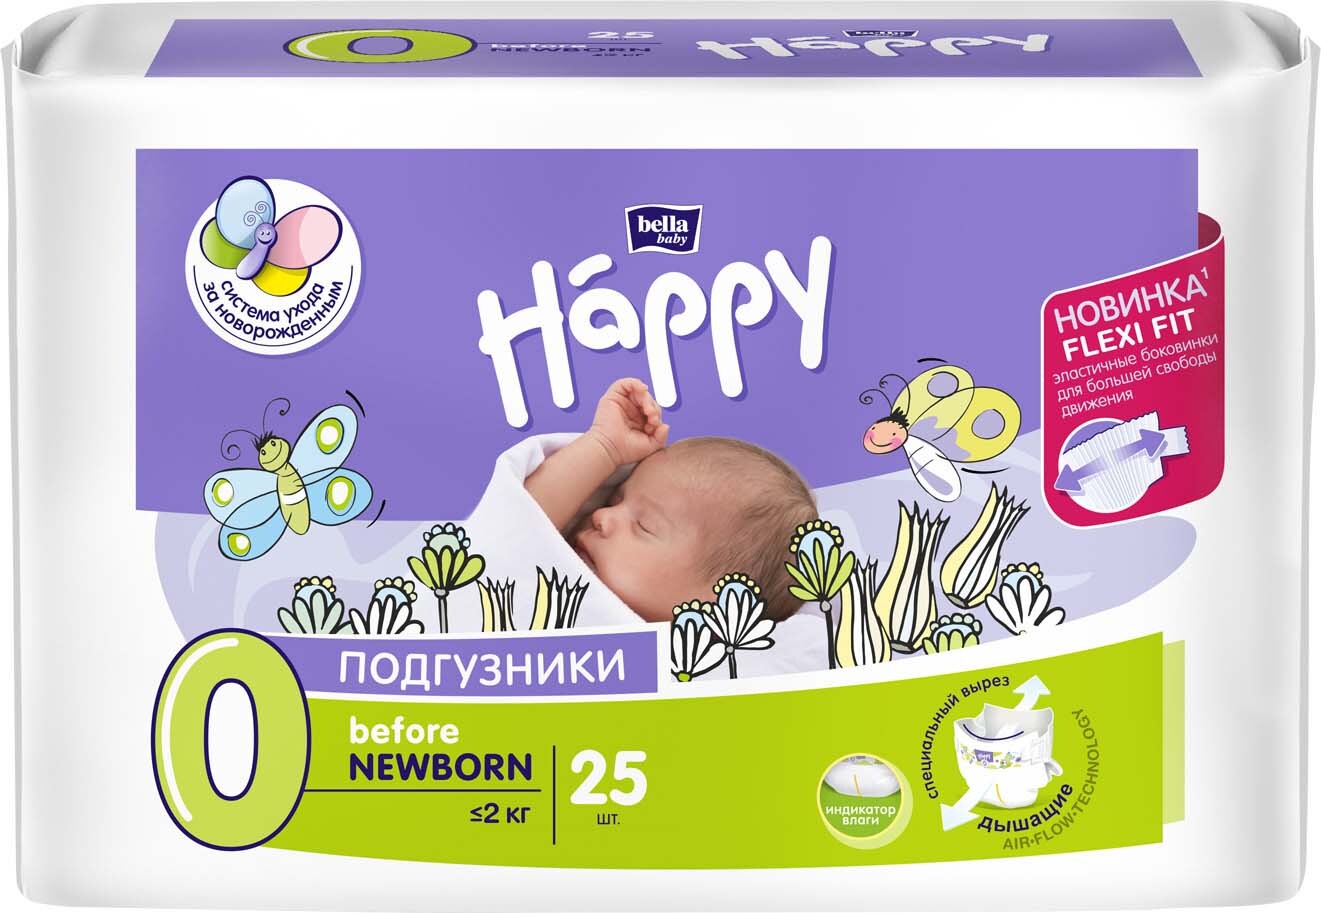 Подгузники гигиенические для детей bella baby Happy before NEWBORN по 25шт  BB-054-BF25-004 - Альметьевск 